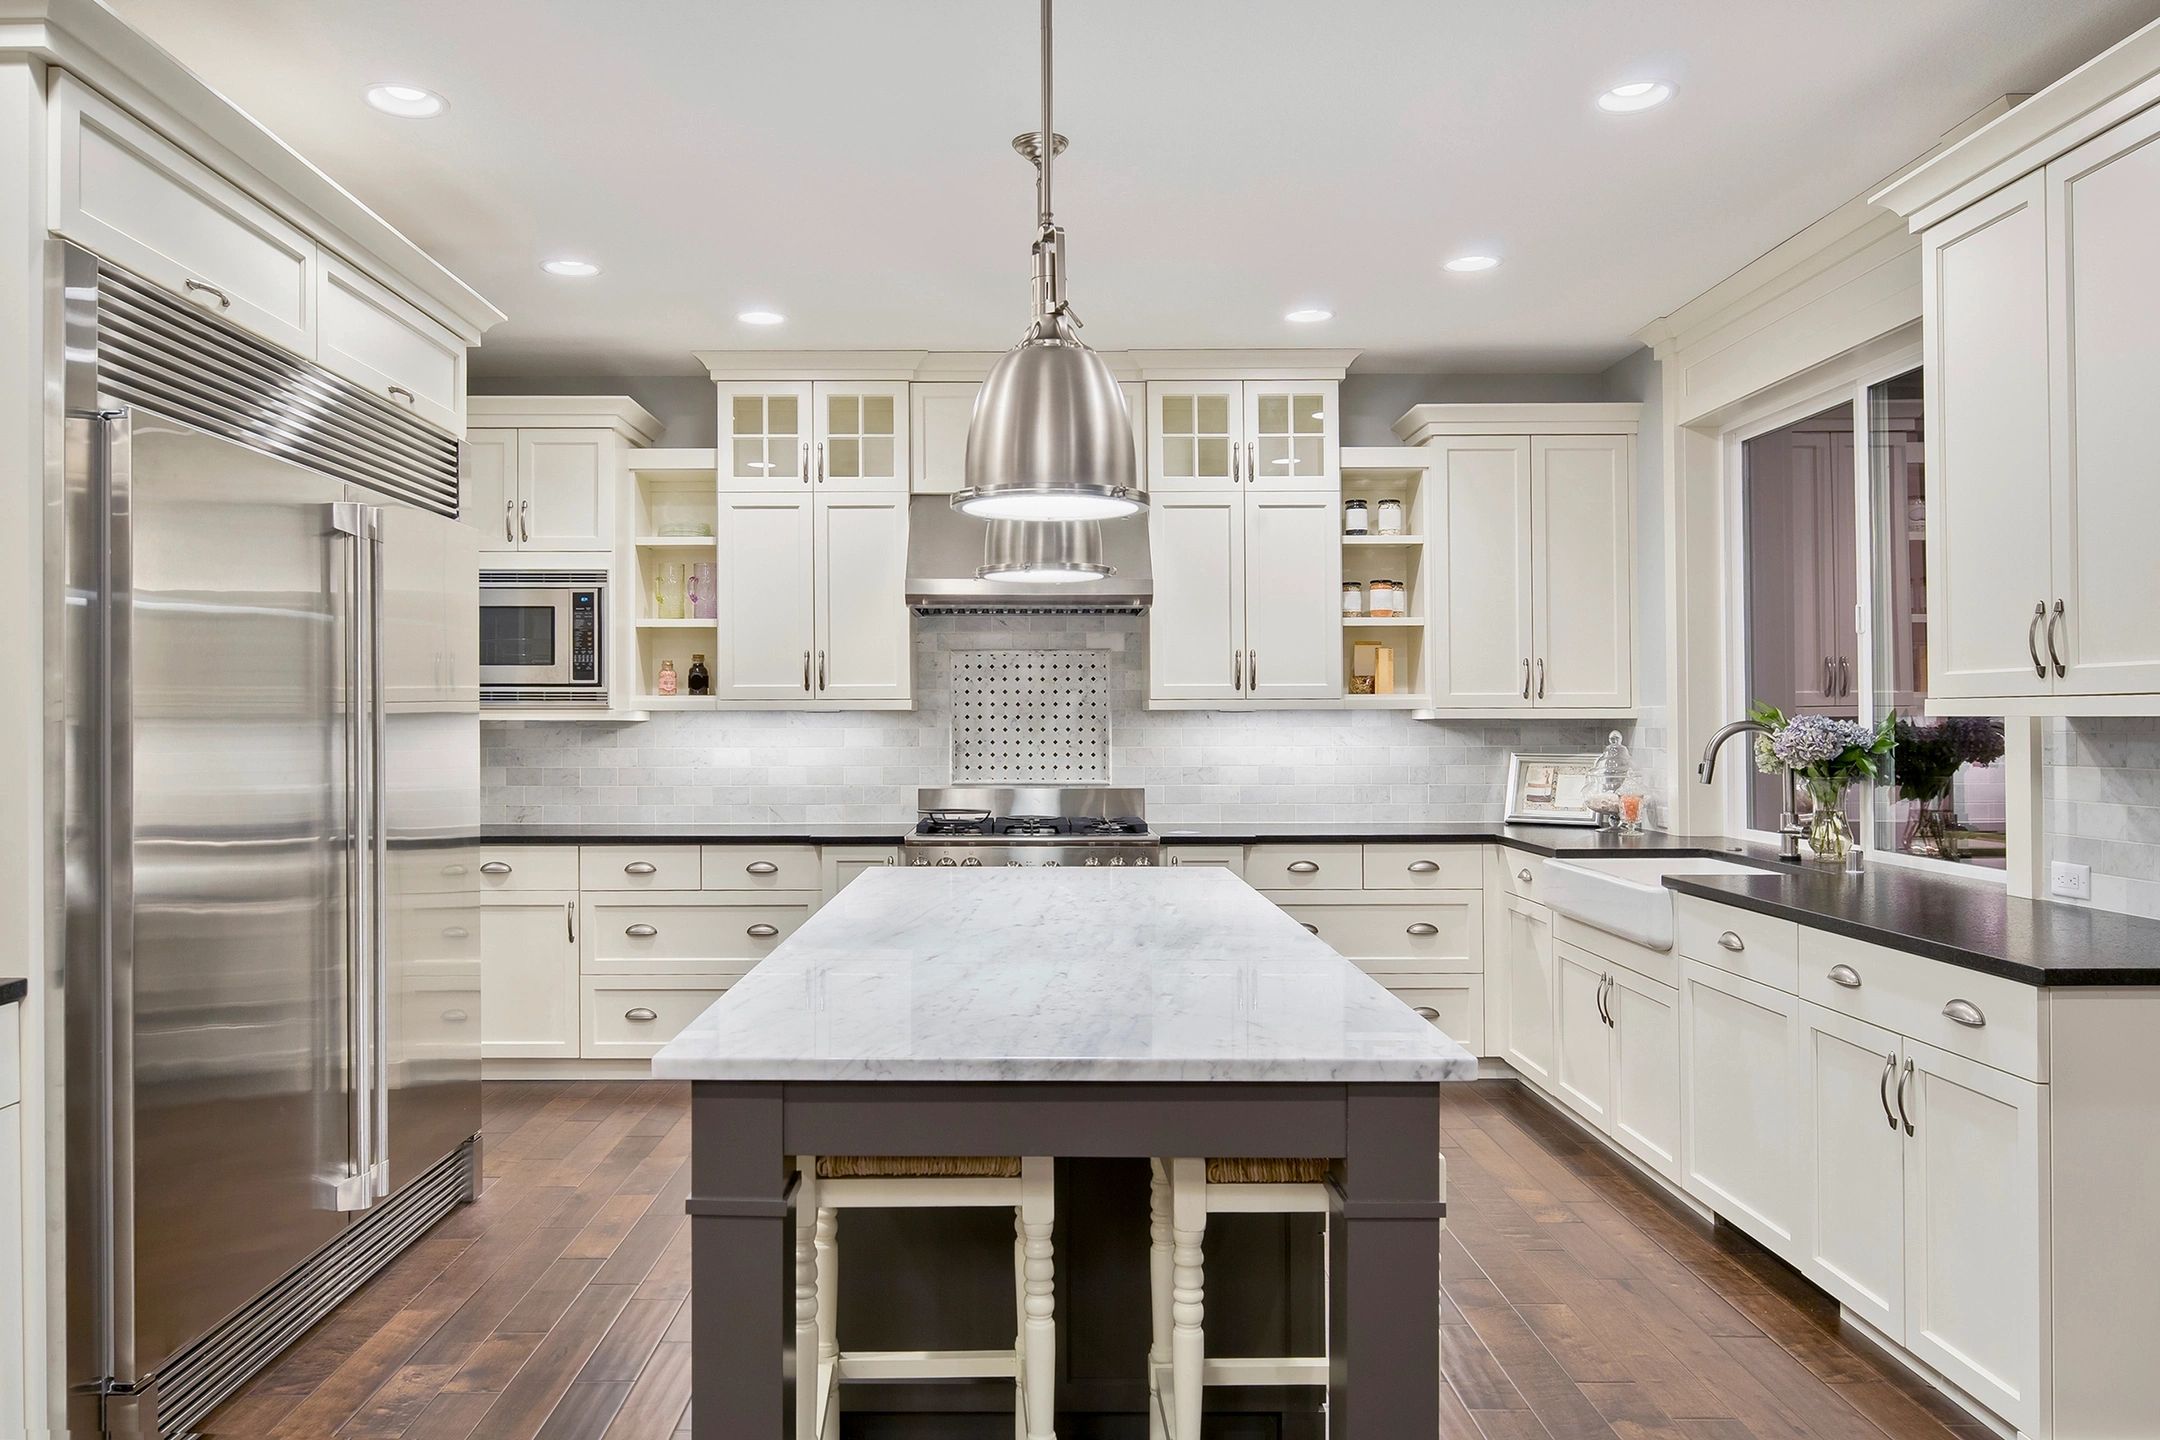 kitchen remodel, counter tops,hardwood floors lighting,plumbing,Design